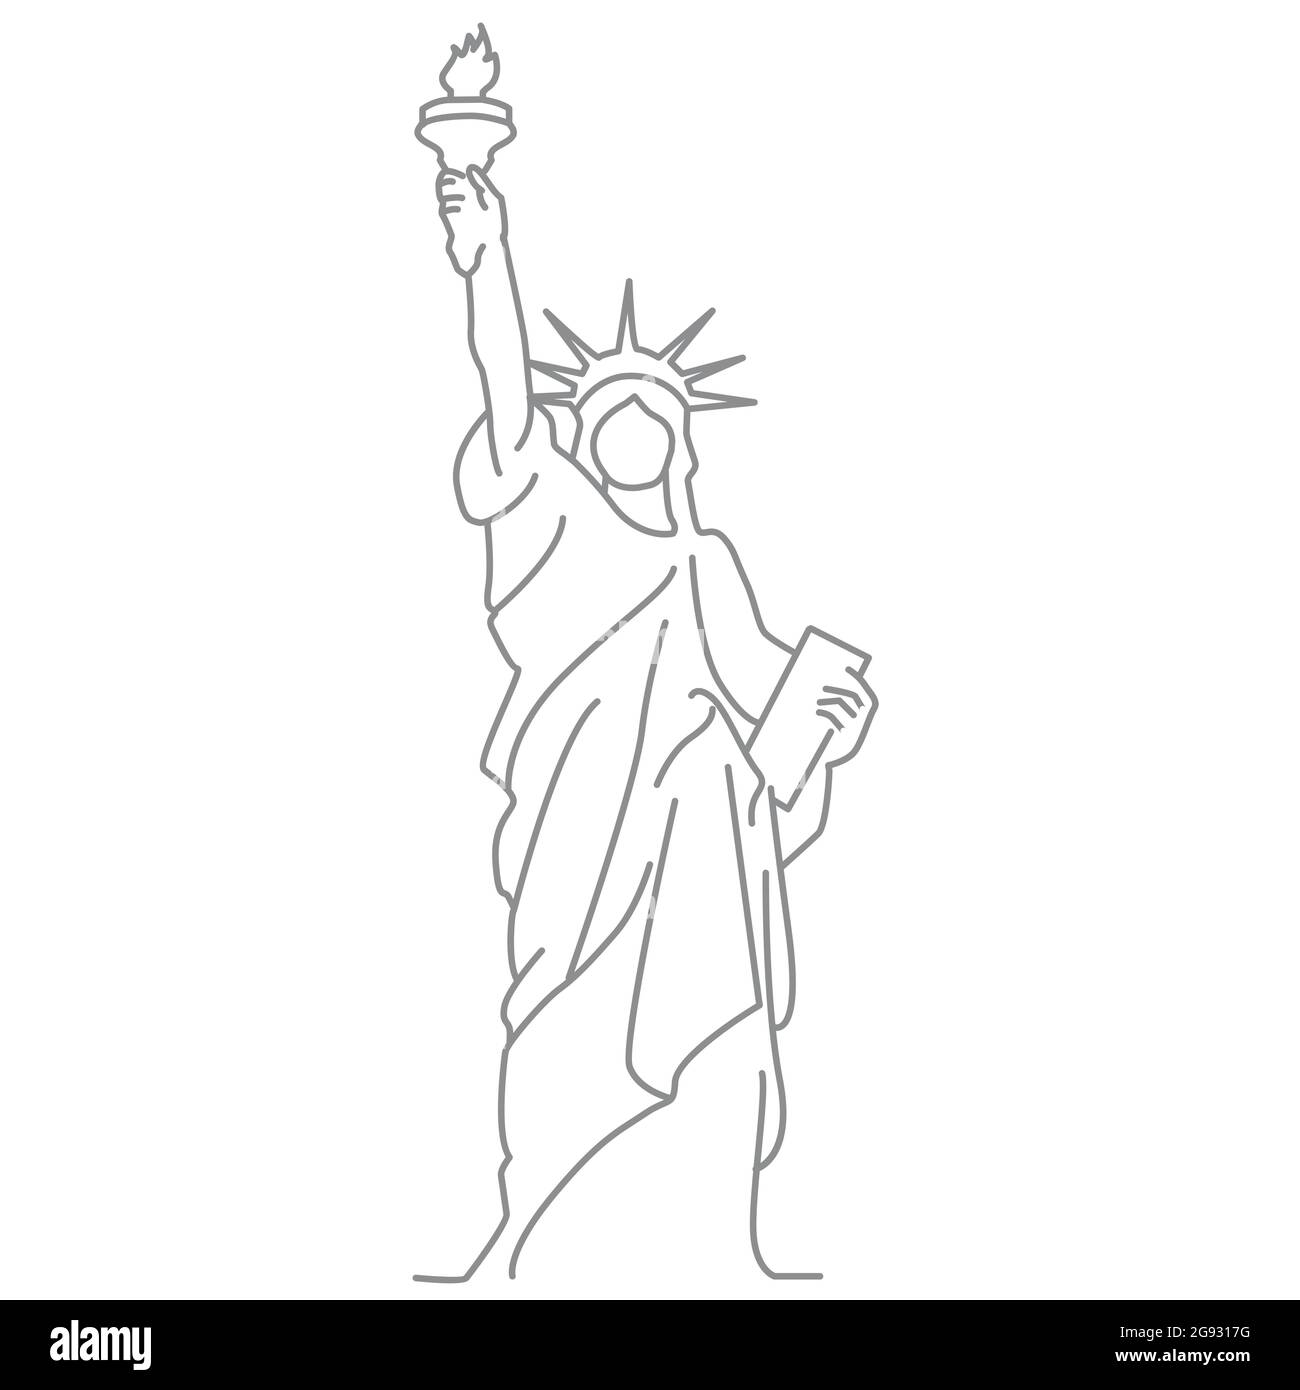 La linea d'arte della scultura della Statua della libertà è un regalo dalla Francia agli Stati Uniti progettato in un colossale stile neoclassico. È una statua della dea romana liberty Illustrazione Vettoriale